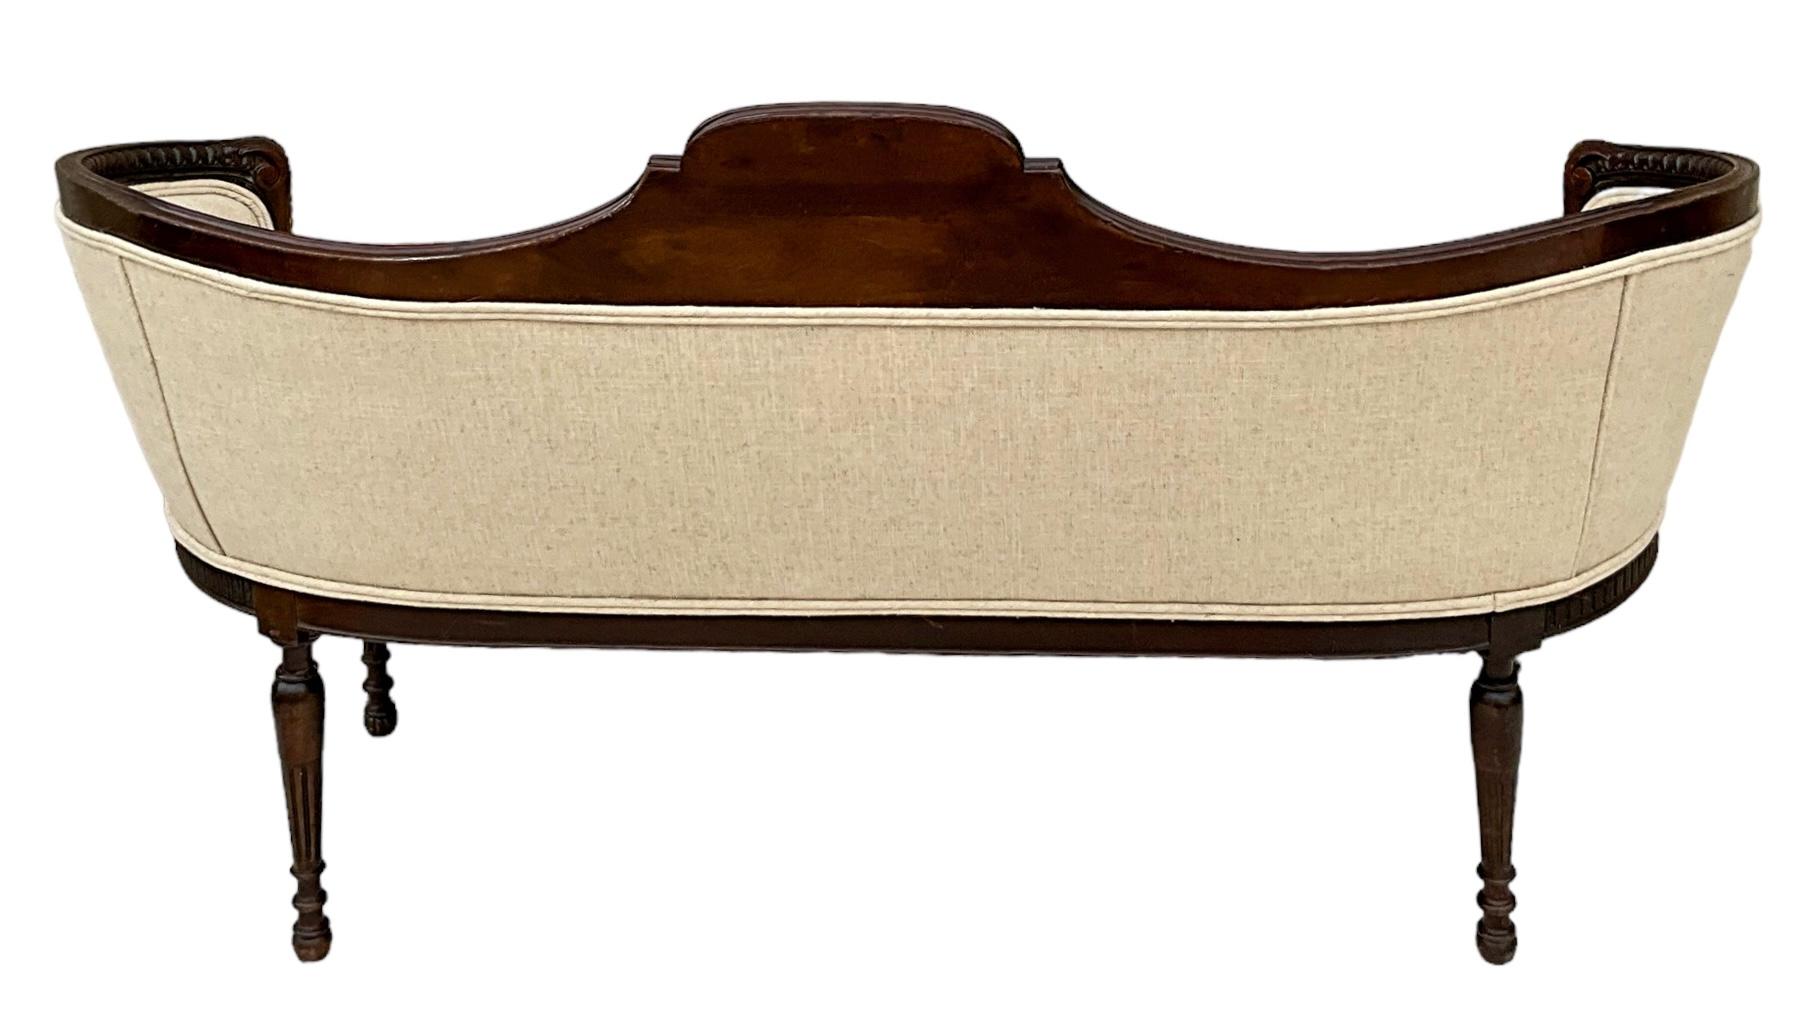 Das ist so ein schönes Stück! Es handelt sich um ein antikes geschnitztes und vergoldetes Mahagoni-Sofa. Es hat ein hübsches gemaltes Medaillon, das zwei Puttis darstellt. Die Polsterung aus hafermehlfarbenem Leinen ist neu. Es ist nicht